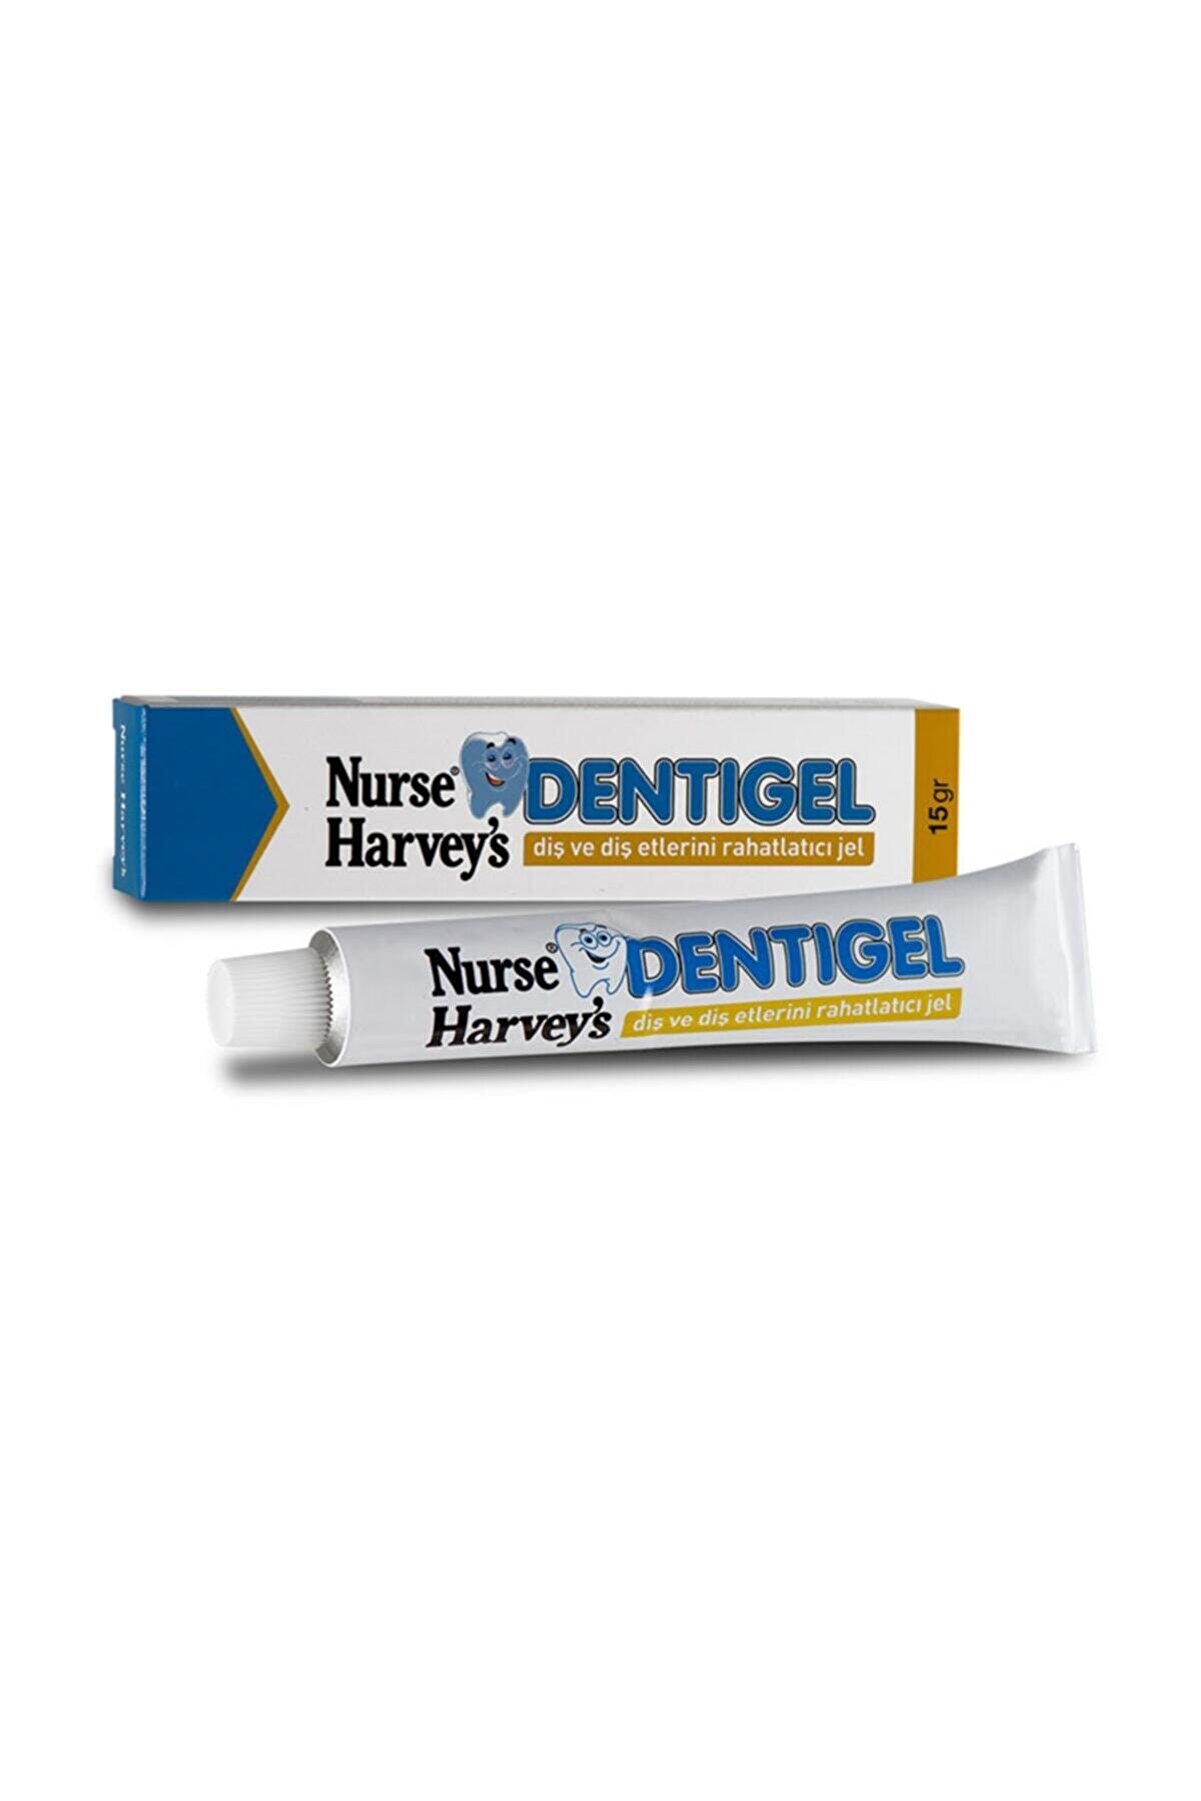 Nurse Harvey's Dentigel 15 gr